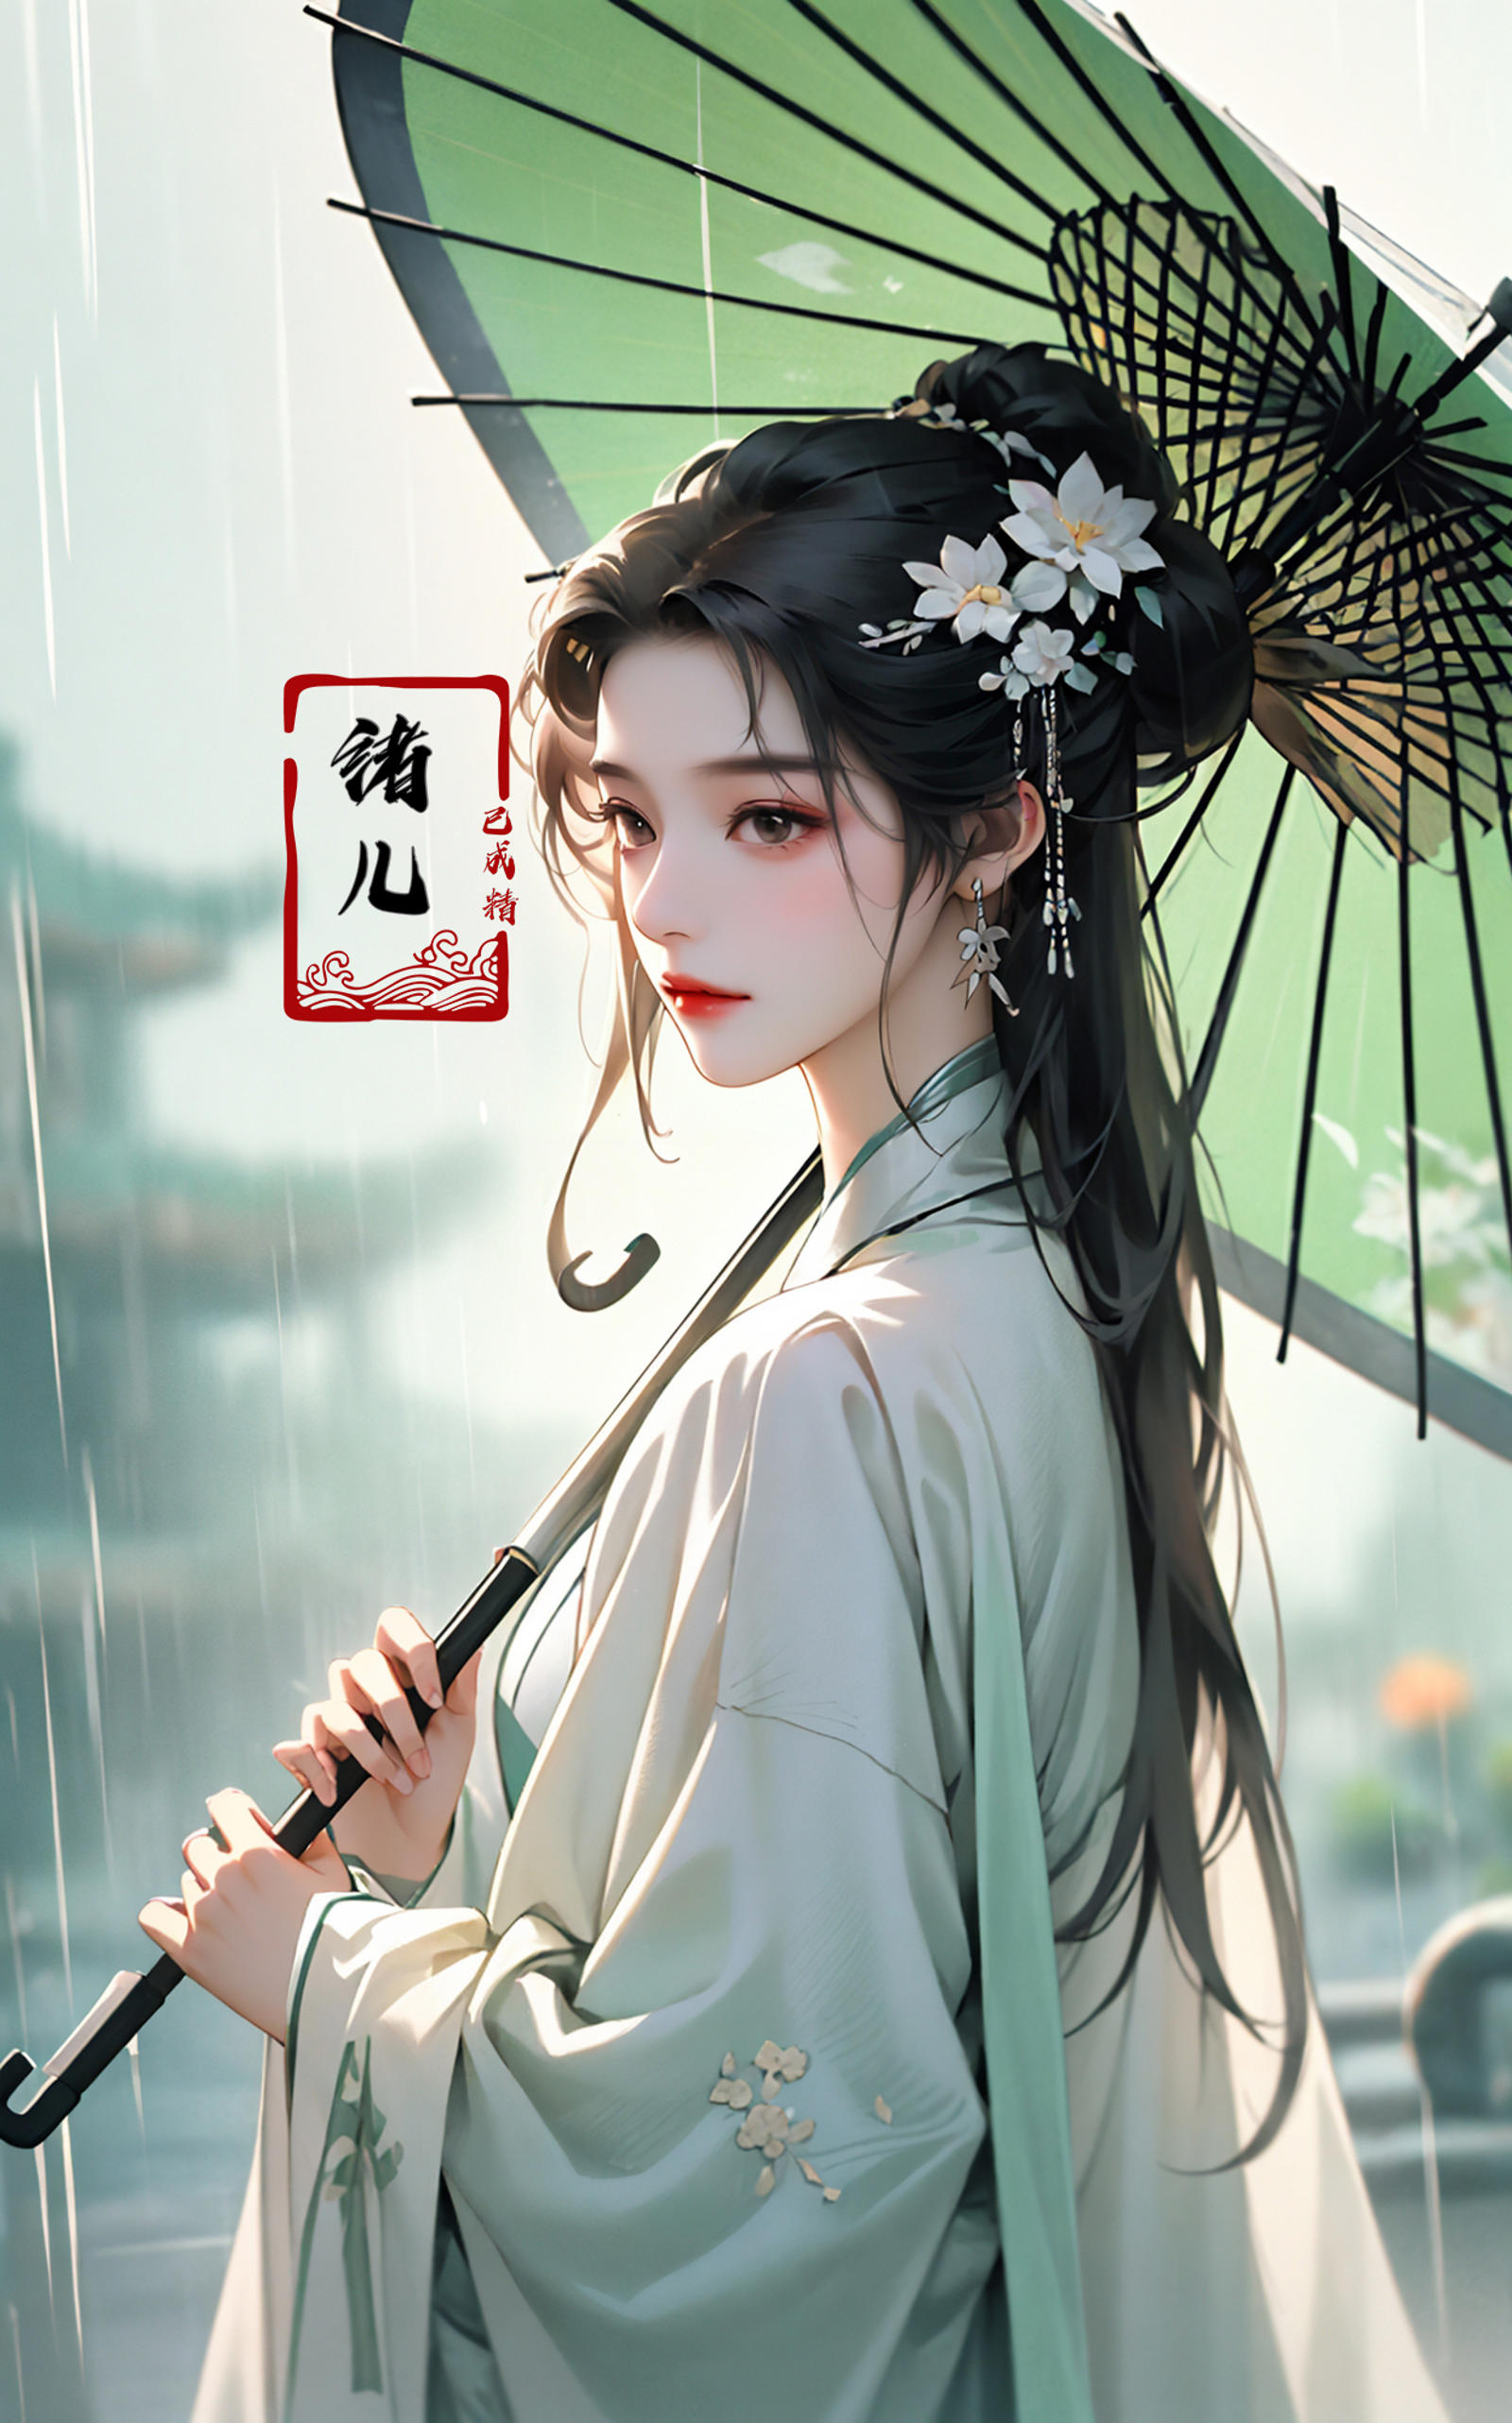 绪儿-伞中仙Fairy Under Umbrella image by XRYCJ